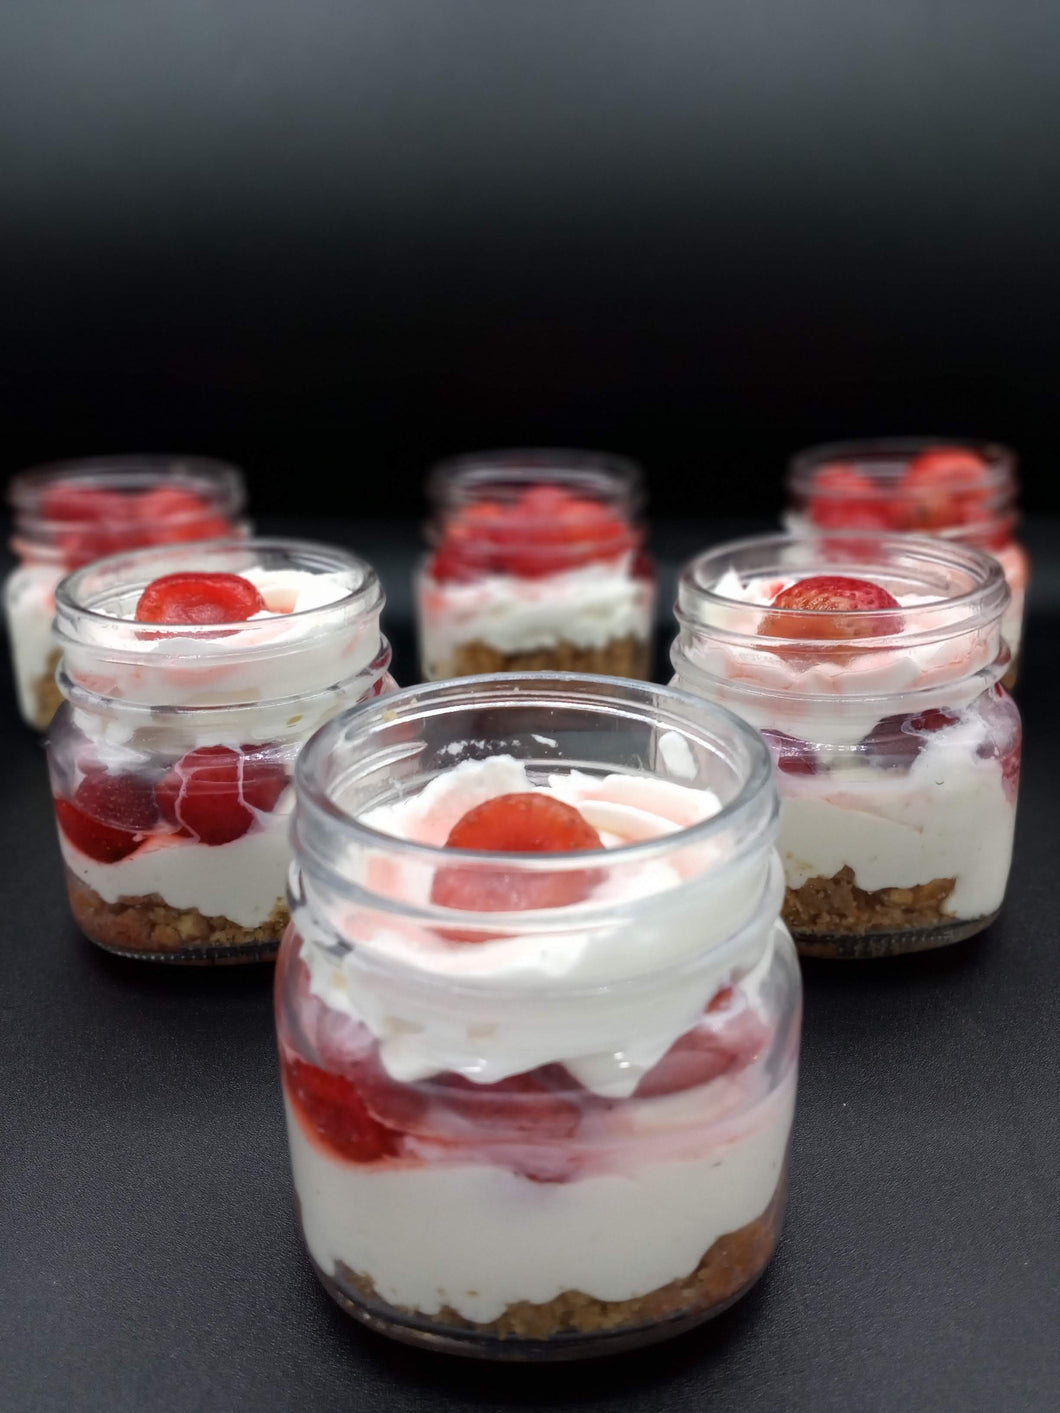 Strawberry Cheesecake Jars